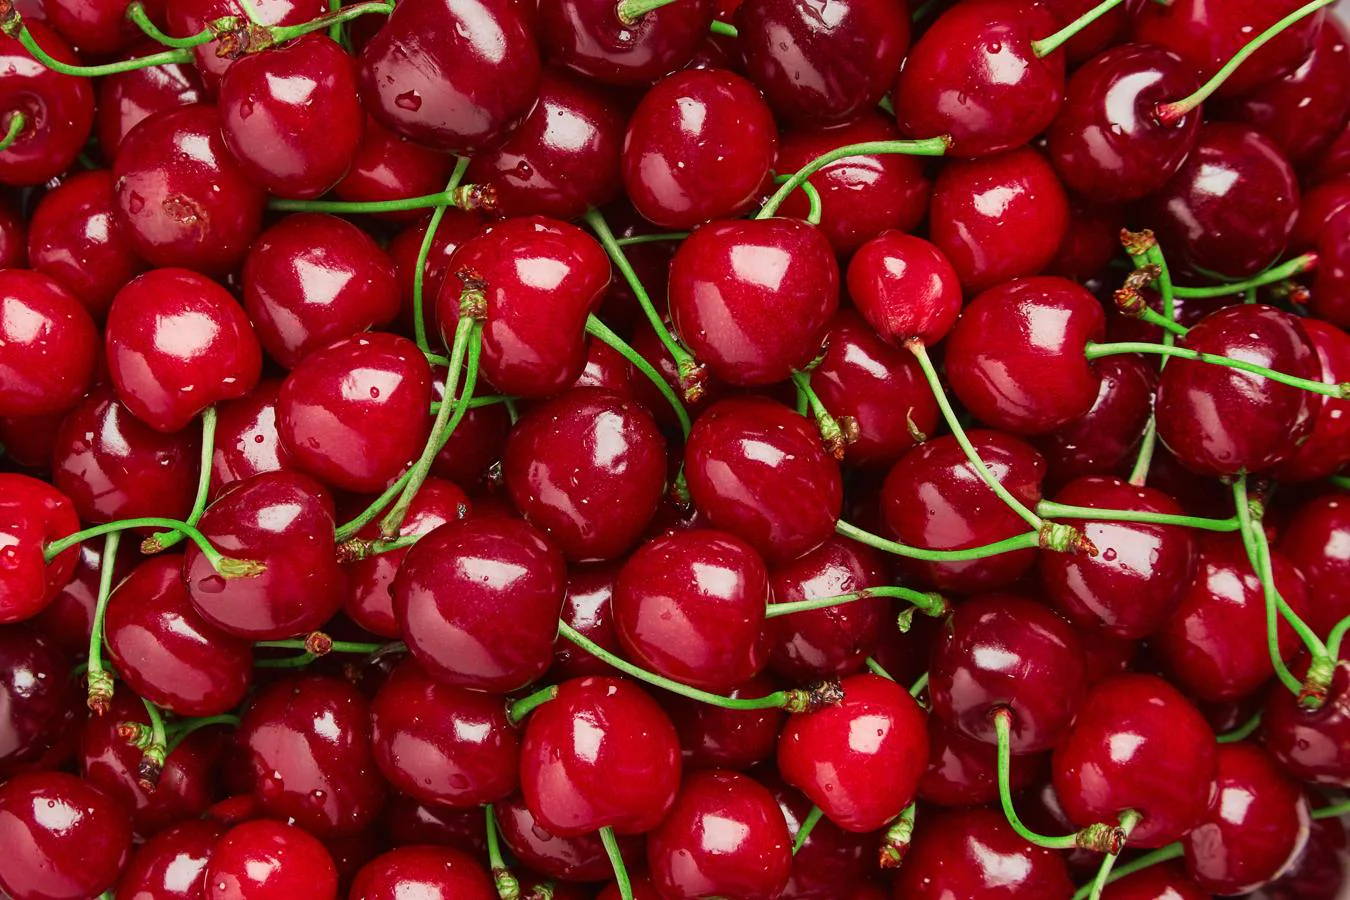 Cereza. Esta fruta de verano es muy rica en flavonoides y polifenoles, importantes antioxidantes. Su contenido en fibra tampoco es despreciable. Los expertos de la OCU dicen que es preferible elegir las <a href="https://www.abc.es/bienestar/alimentacion/abci-cerezas-202005210822_noticia.html" target="_blank">cerezas </a>que presentan un color rojo intenso.